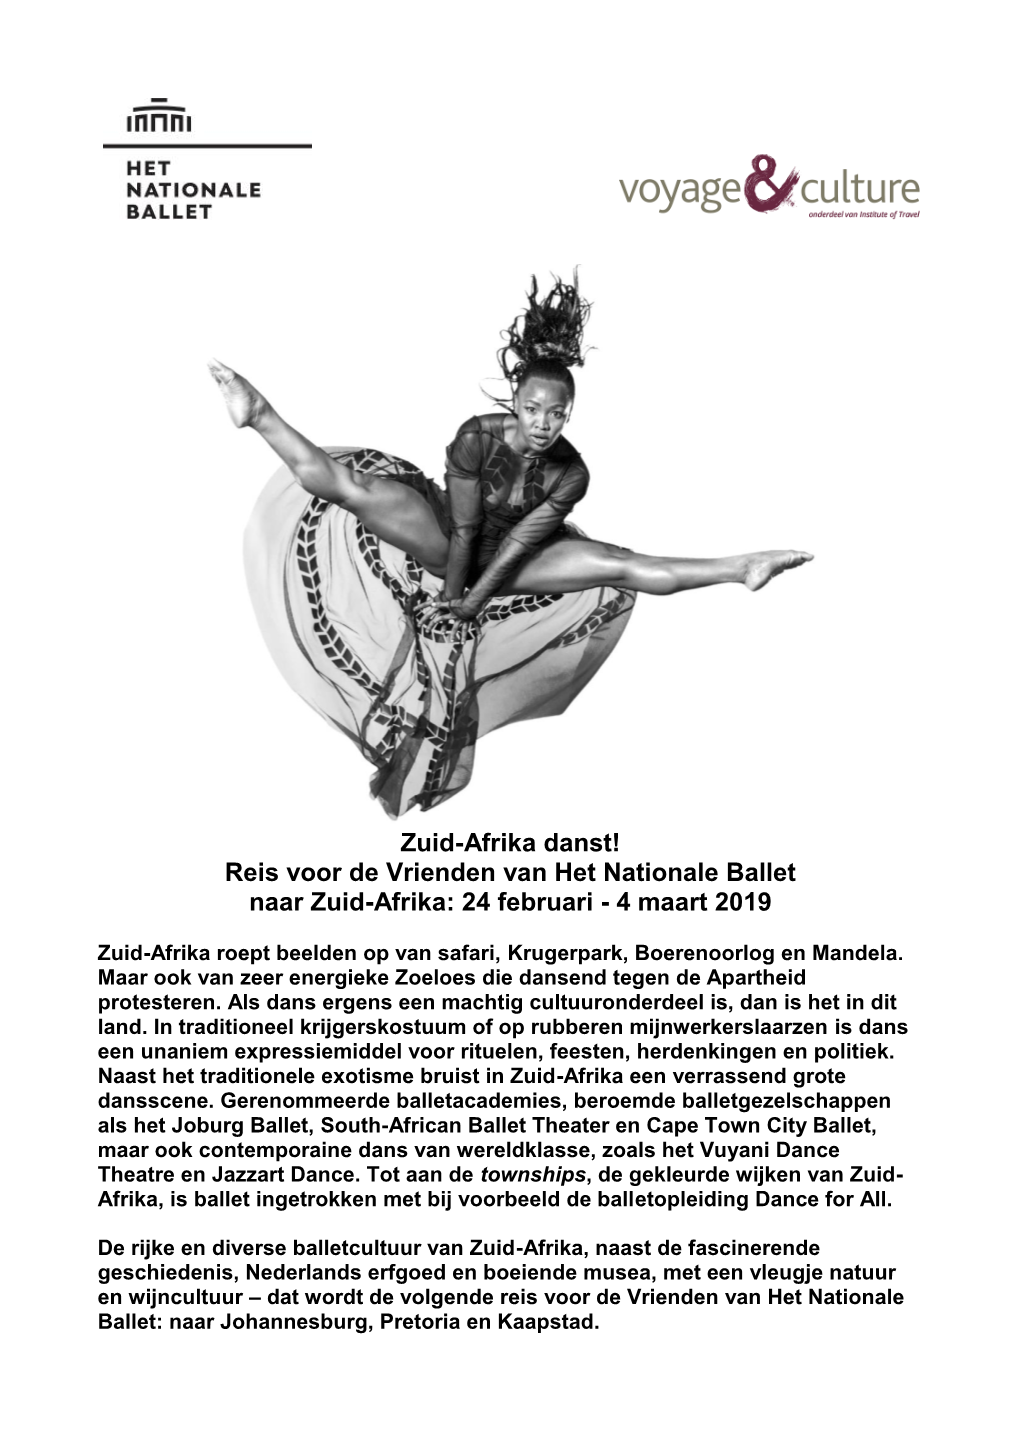 Reis Voor De Vrienden Van Het Nationale Ballet Naar Zuid-Afrika: 24 Februari - 4 Maart 2019